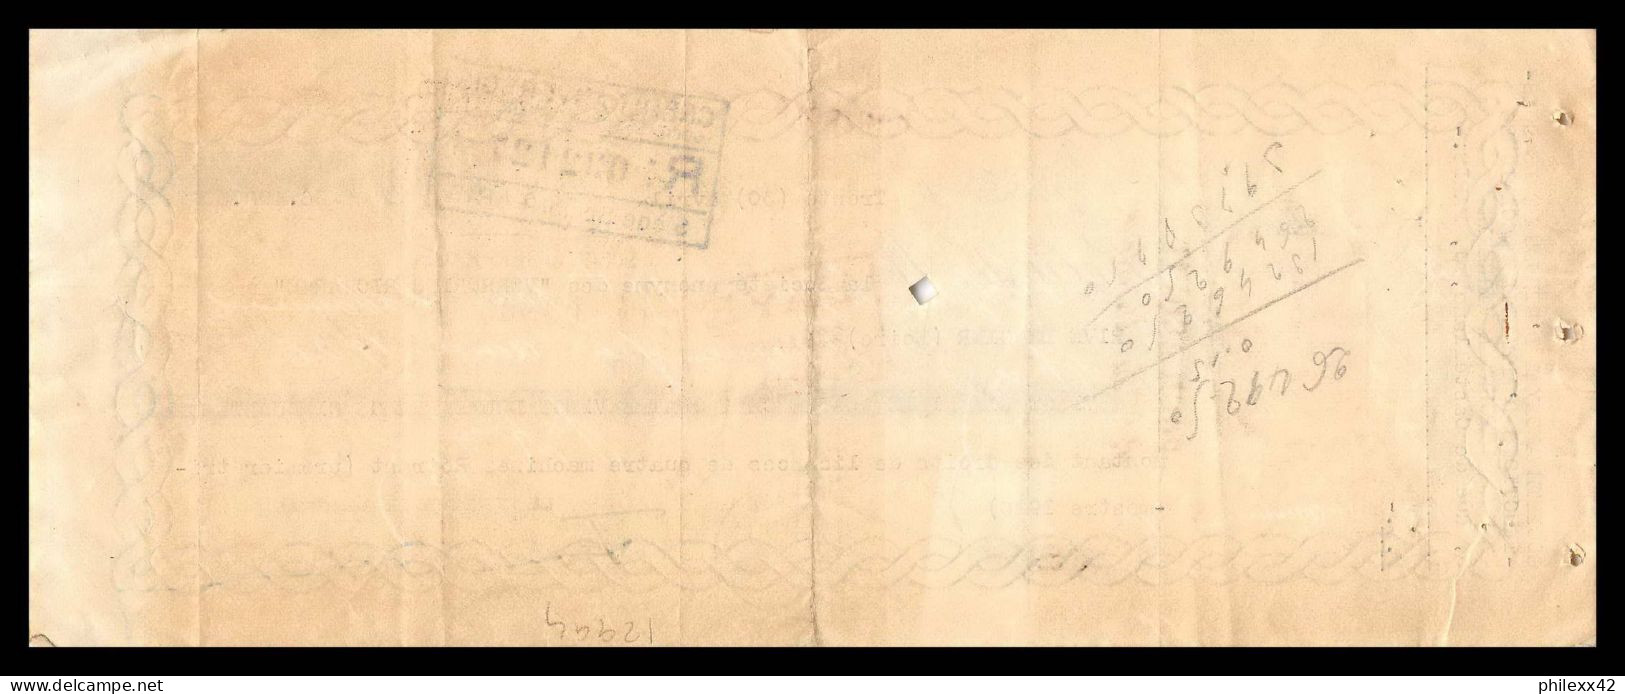 12994 Paris Verreries Richarme Rive De Gier Loire 1926 Timbre Fiscal Fiscaux Sur Document France - Storia Postale